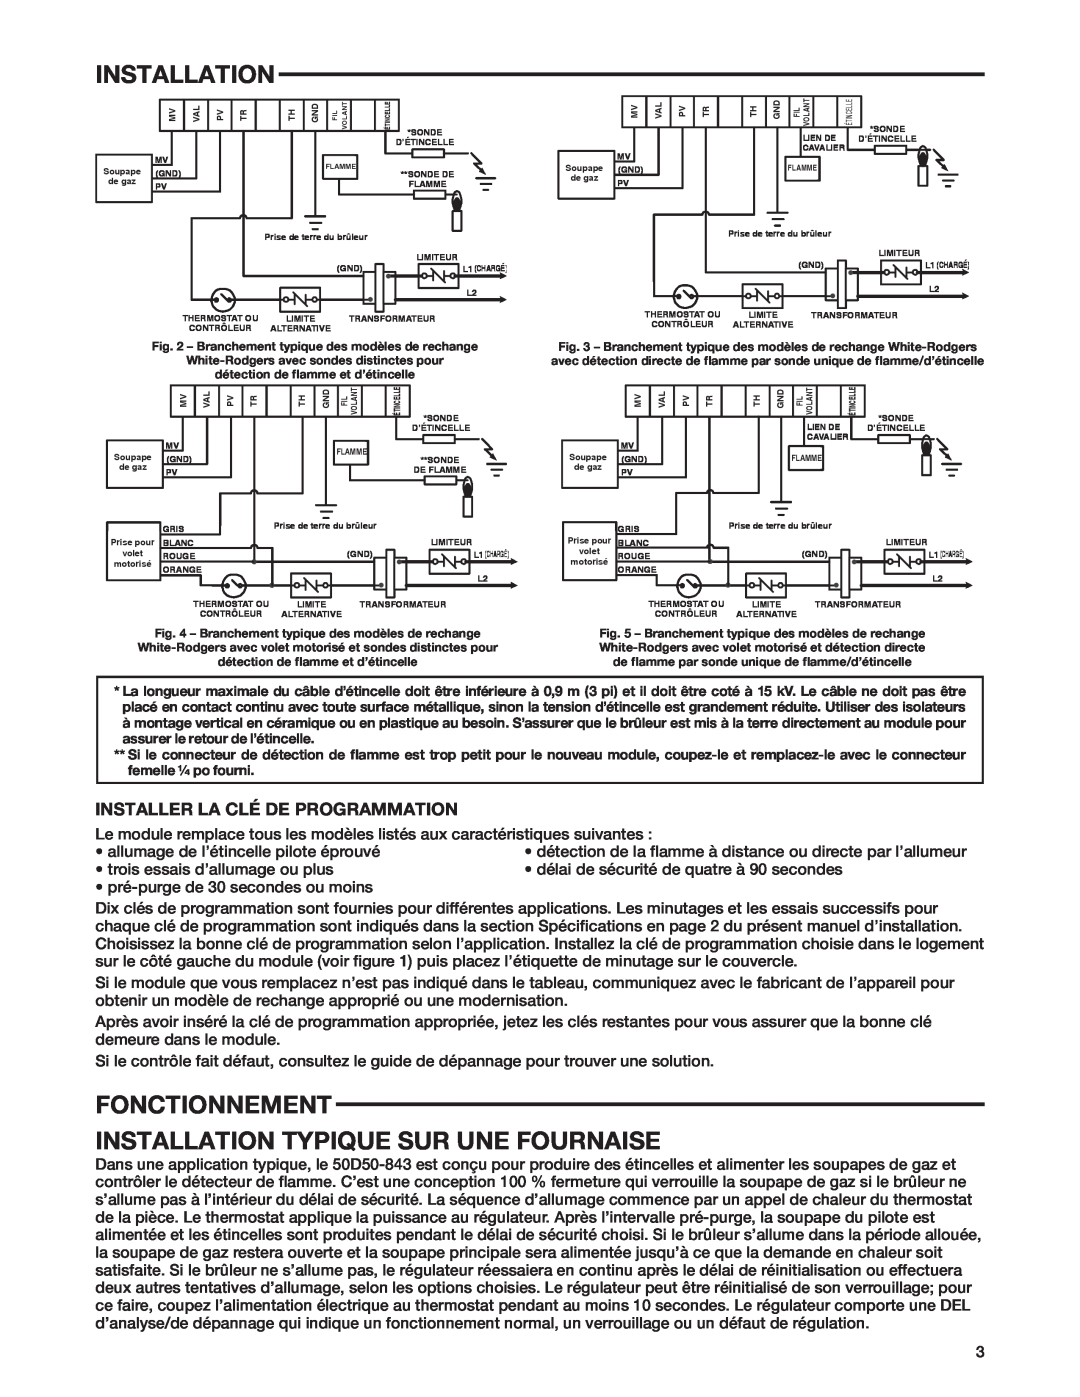 White Rodgers 50D50-843 manual Fonctionnement Installation Typique Sur Une Fournaise, Installer La Clé De Programmation 